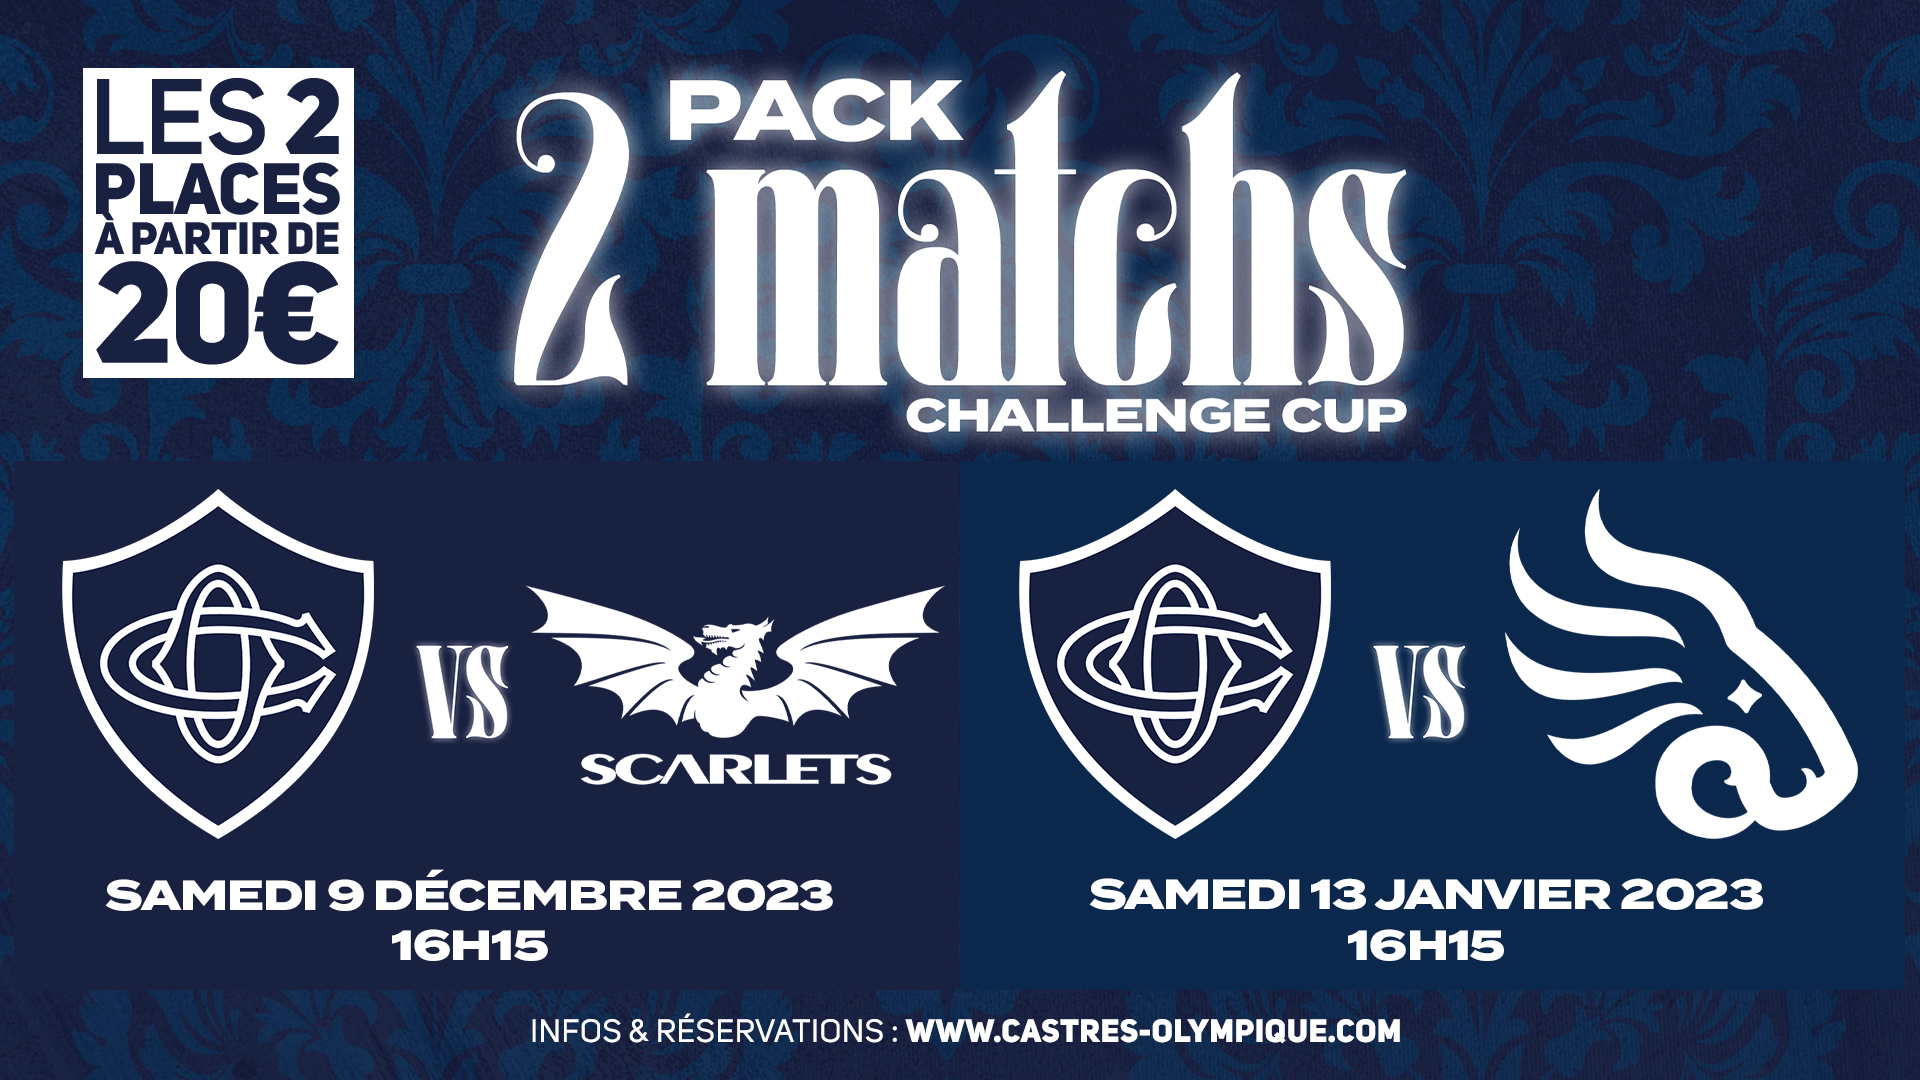 Le Pack <b>Challenge Cup</b> est disponible à partir de 20€ ! - Castres Olympique